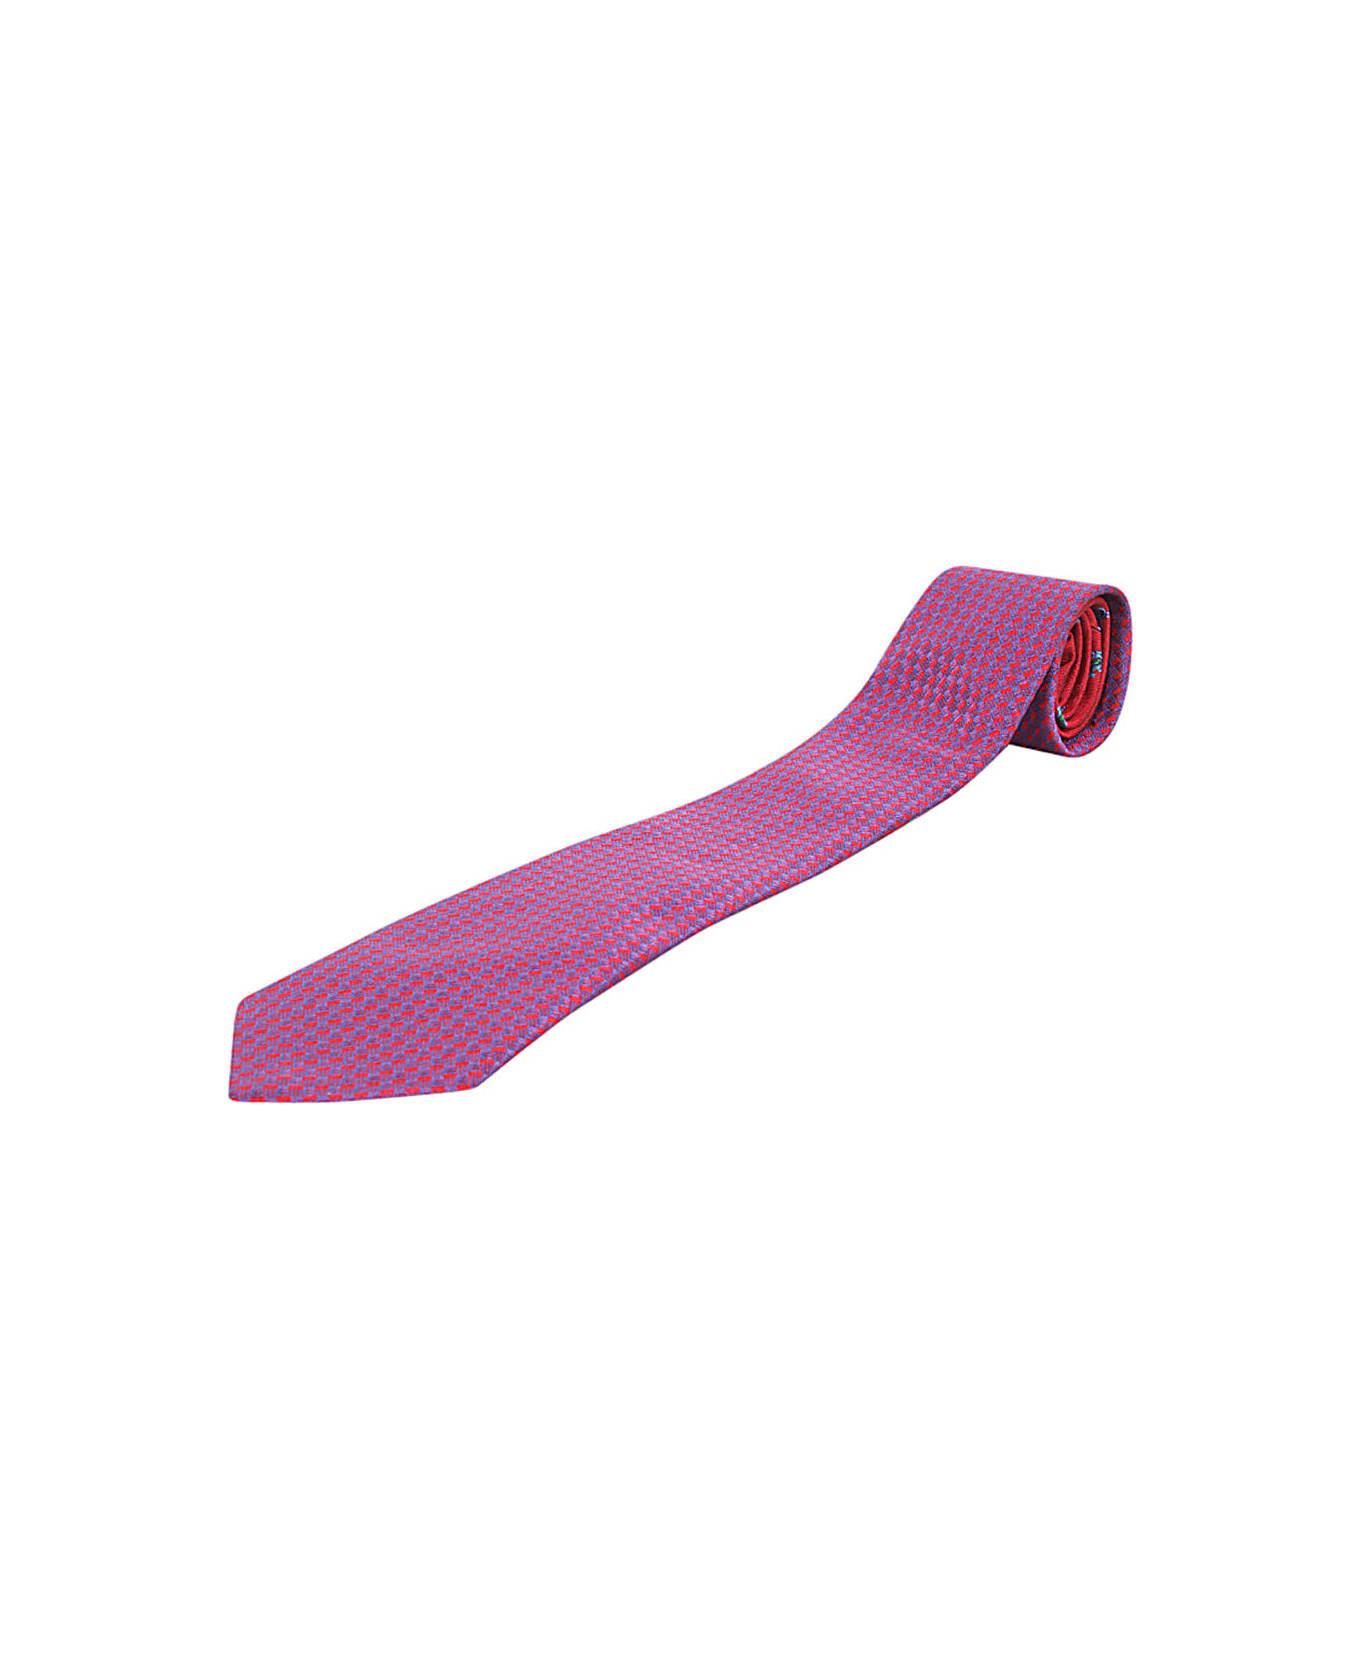 Etro Two-fabric 8cm Tie - Multi